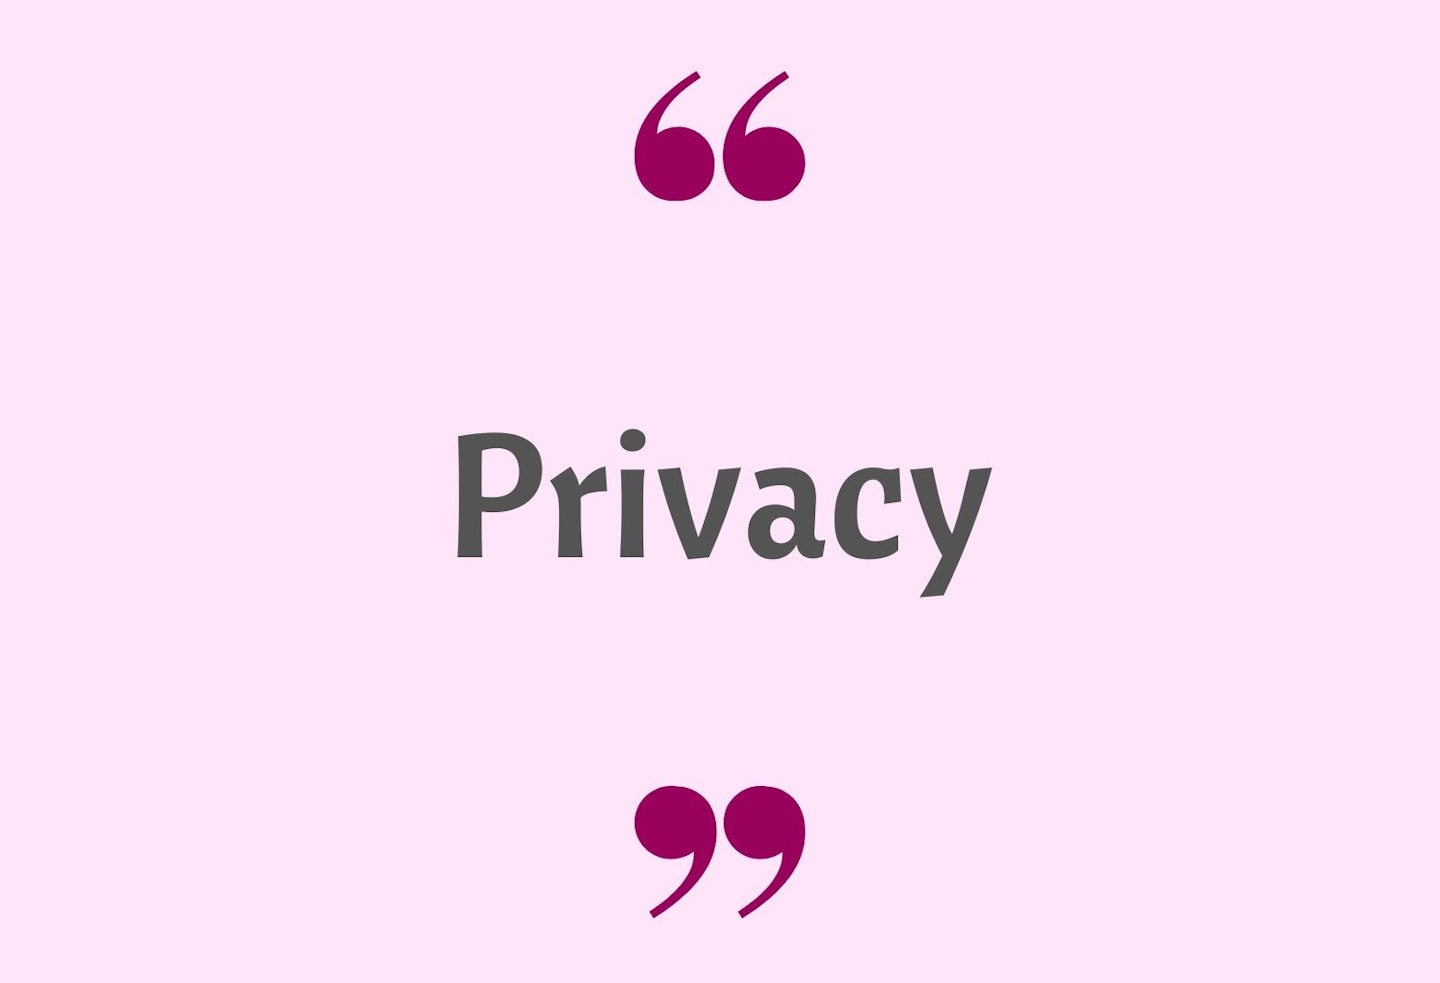 17) Privacy